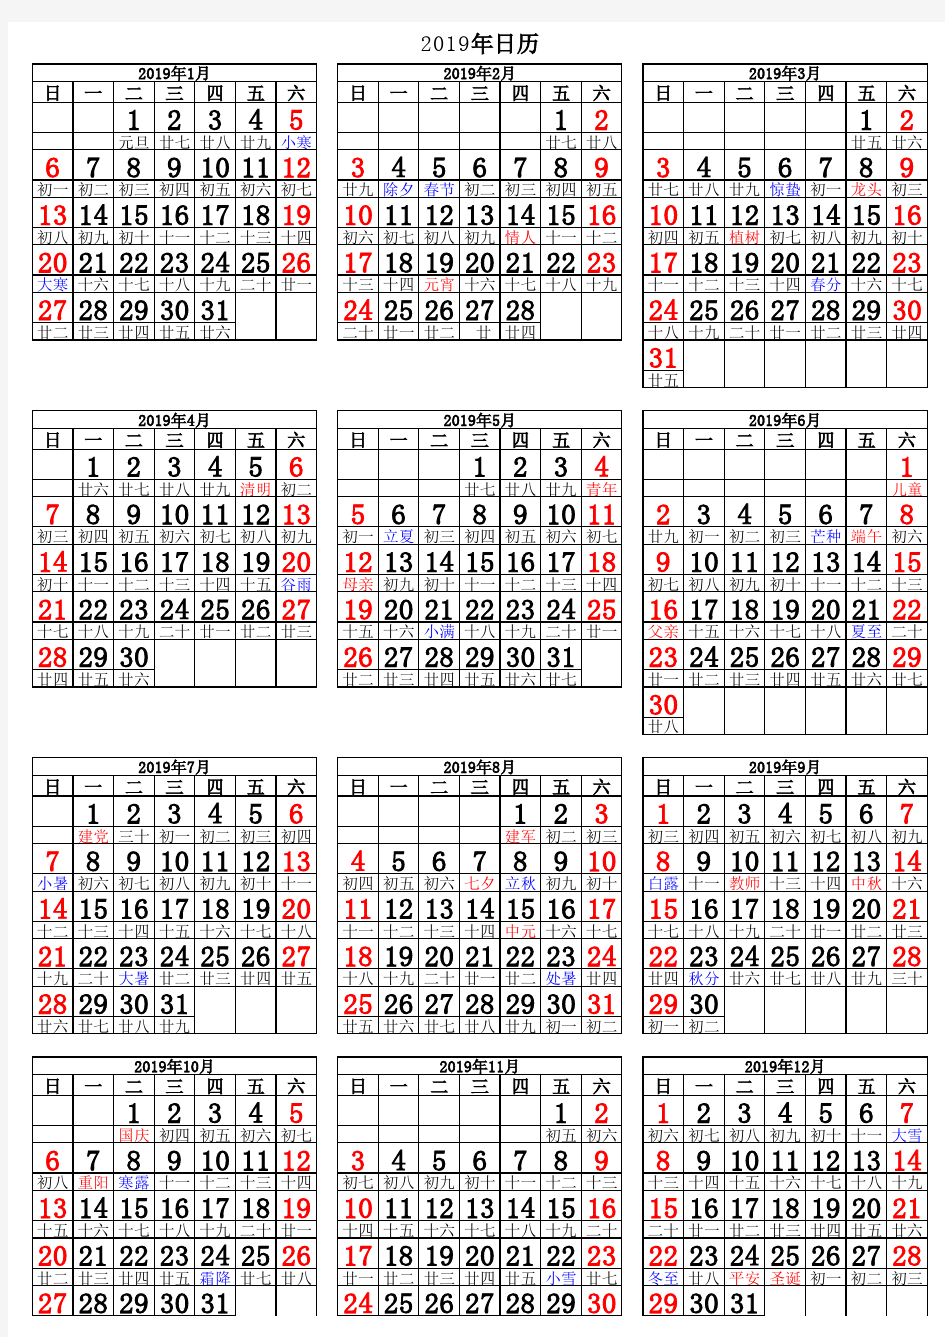 2019年日历表(A4纸打印完美版)